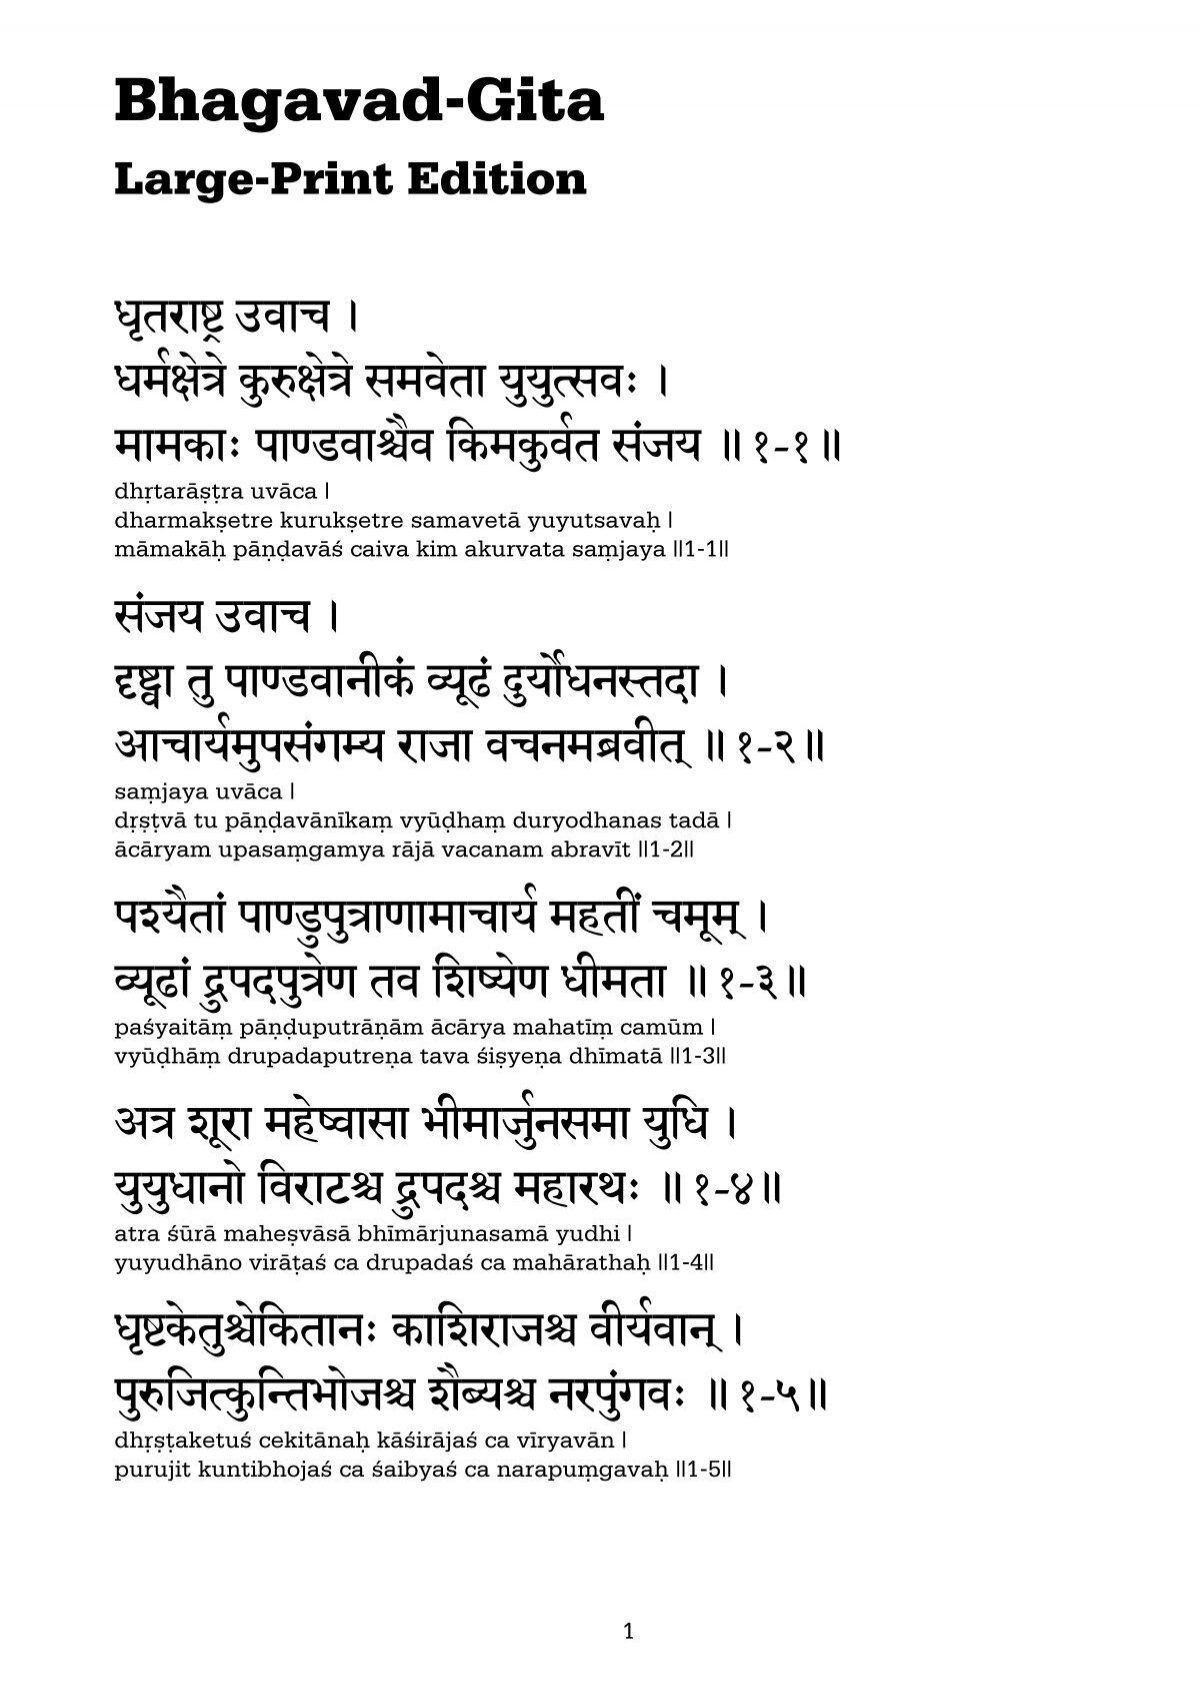 bhagavad-gita-large-print-edition-sanskrit-web